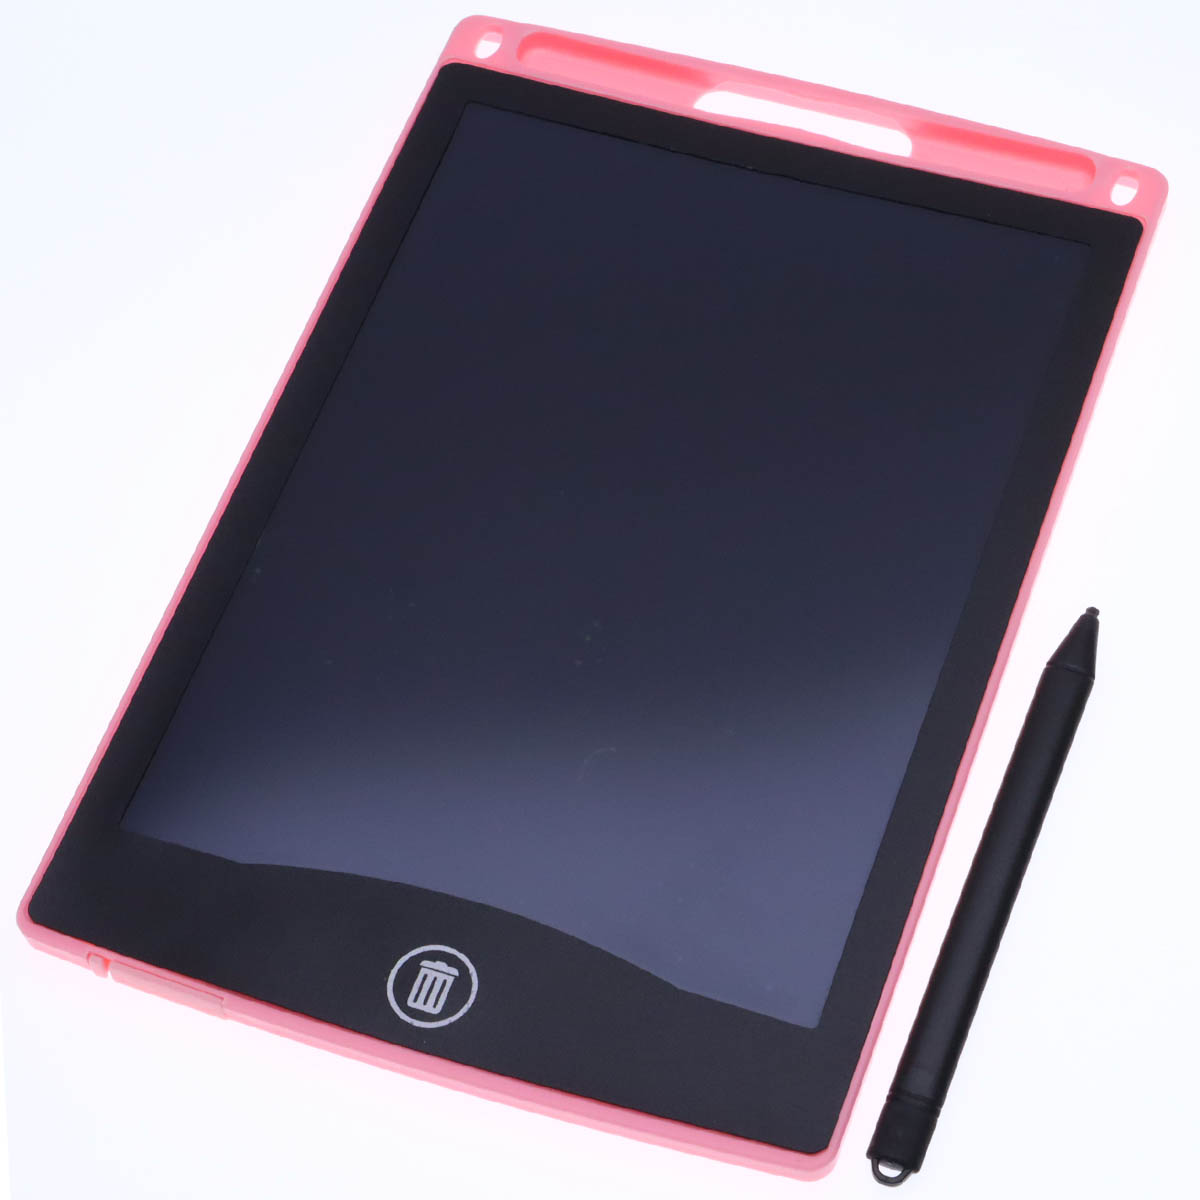 Графический планшет BAIBIAN с сенсорным дисплеем для рисования, 8.5 дюймов, цвет розовый